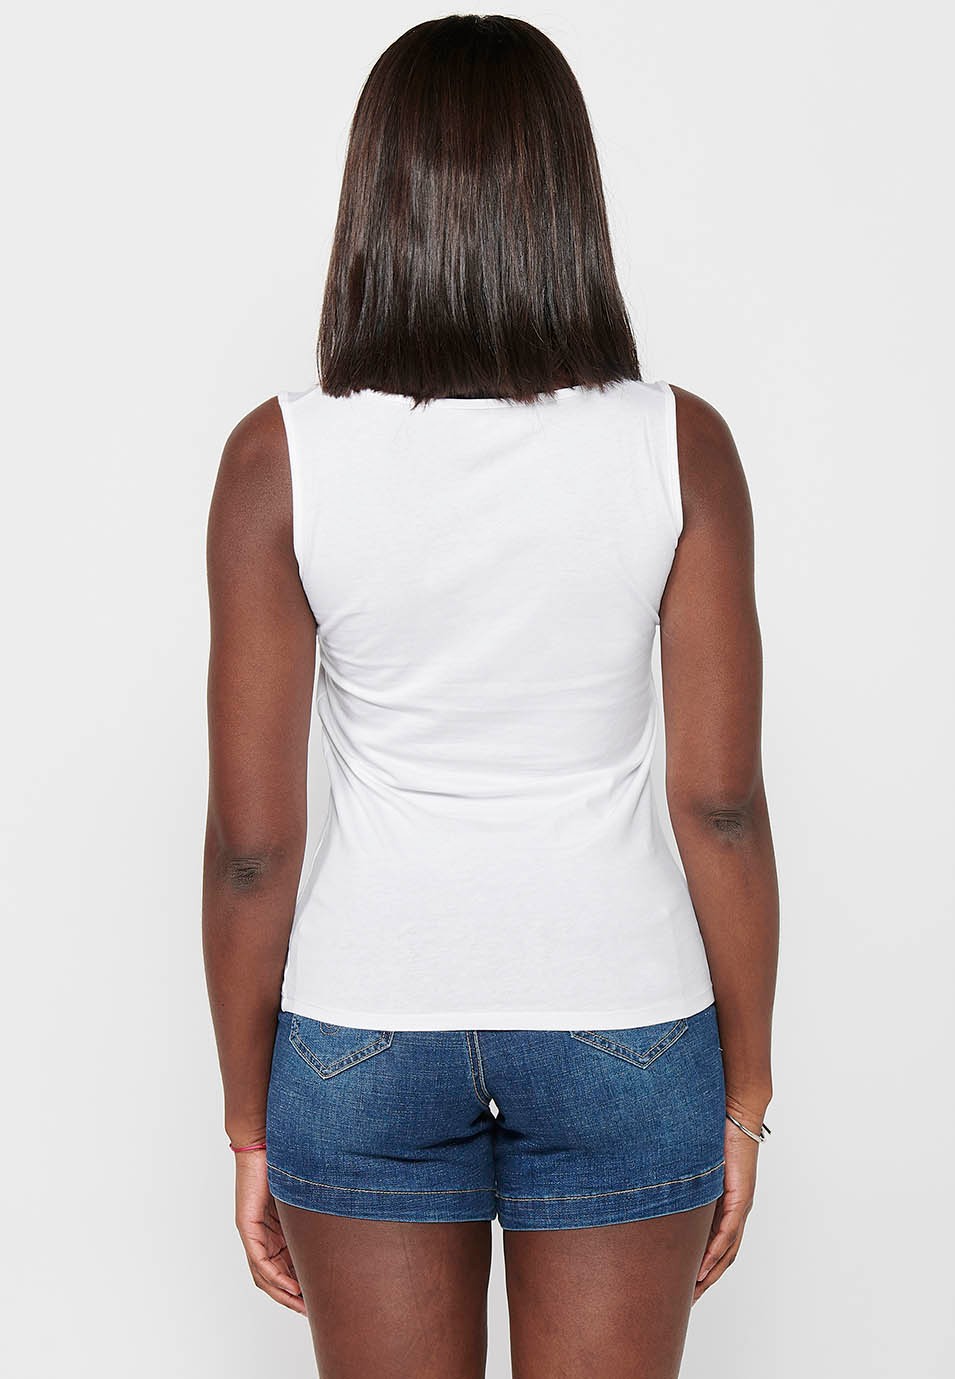 Camiseta sin magas, escote redondo y bordado delantero, color Blanco para mujer 